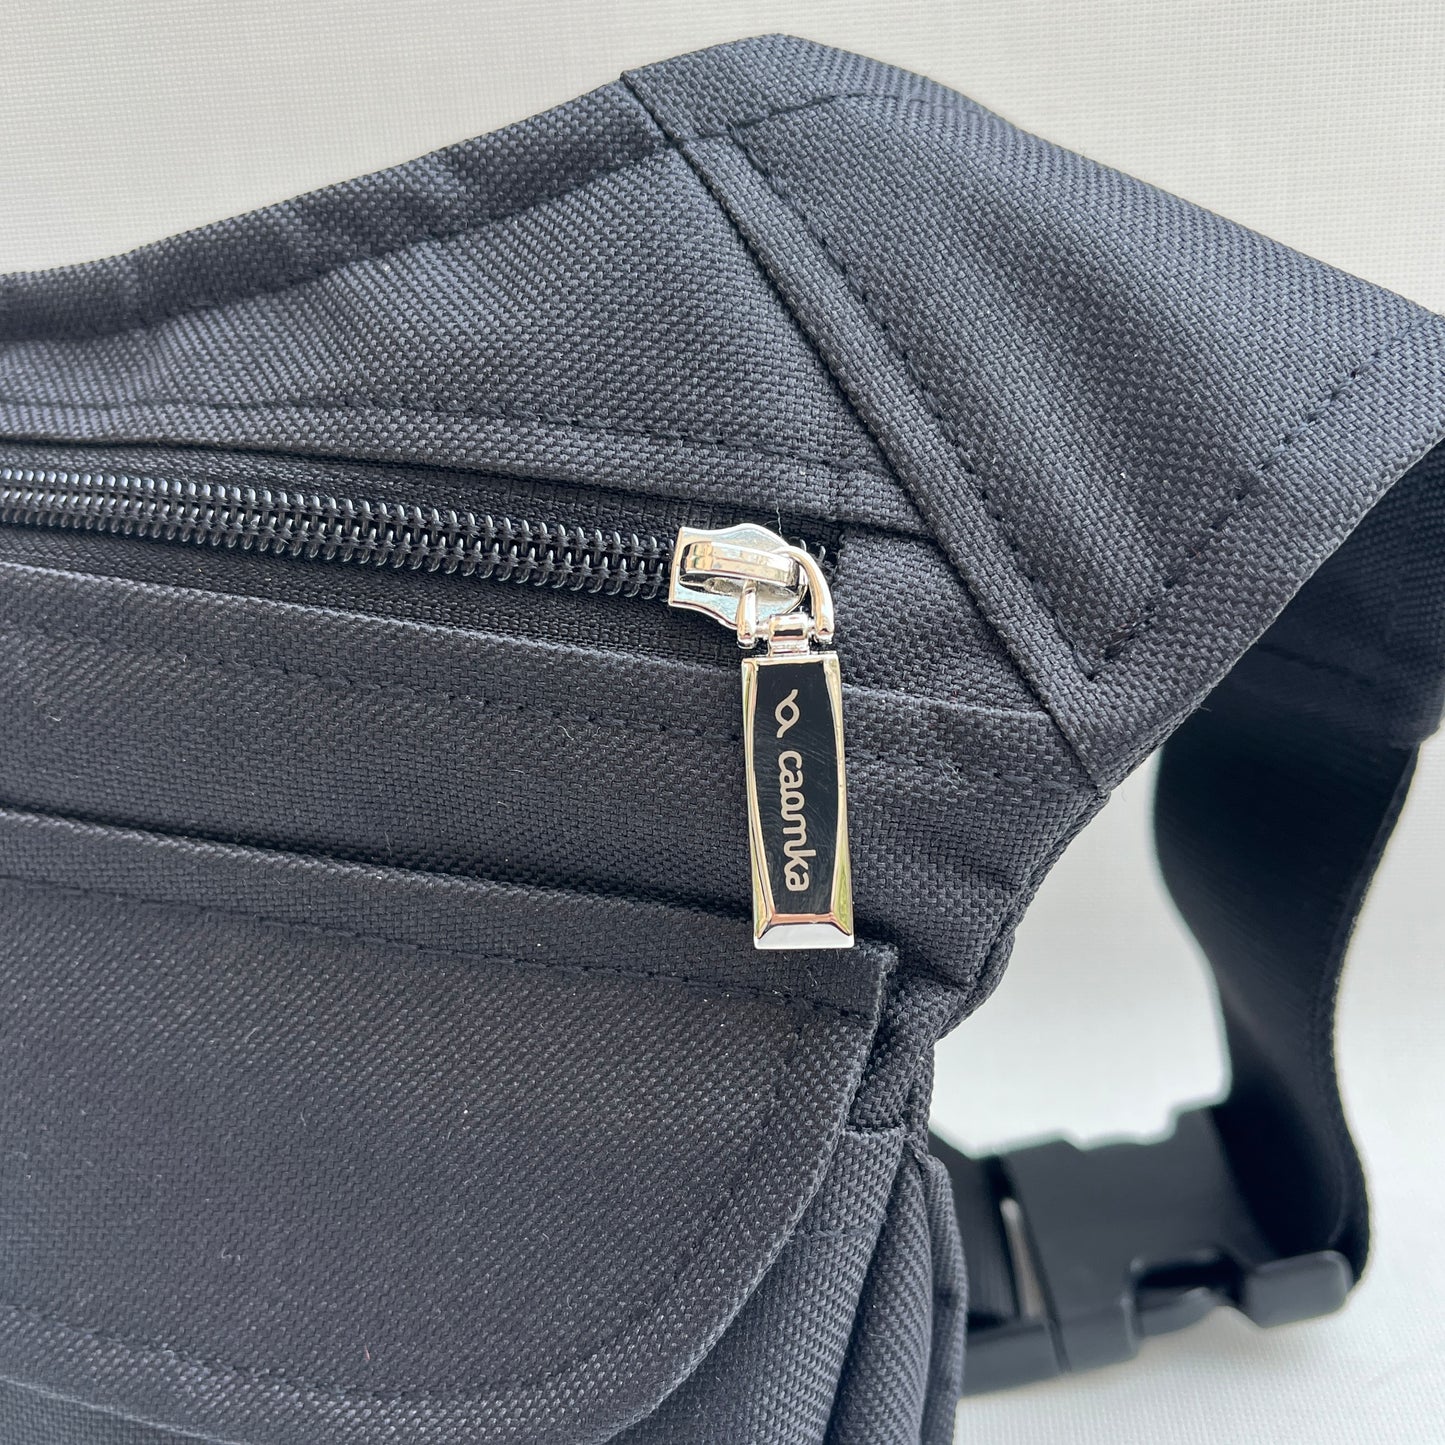 Classic Black "Cordura" &amp; Silver + Tasche auf der Rückseite, exklusives Teil Nr. 10473